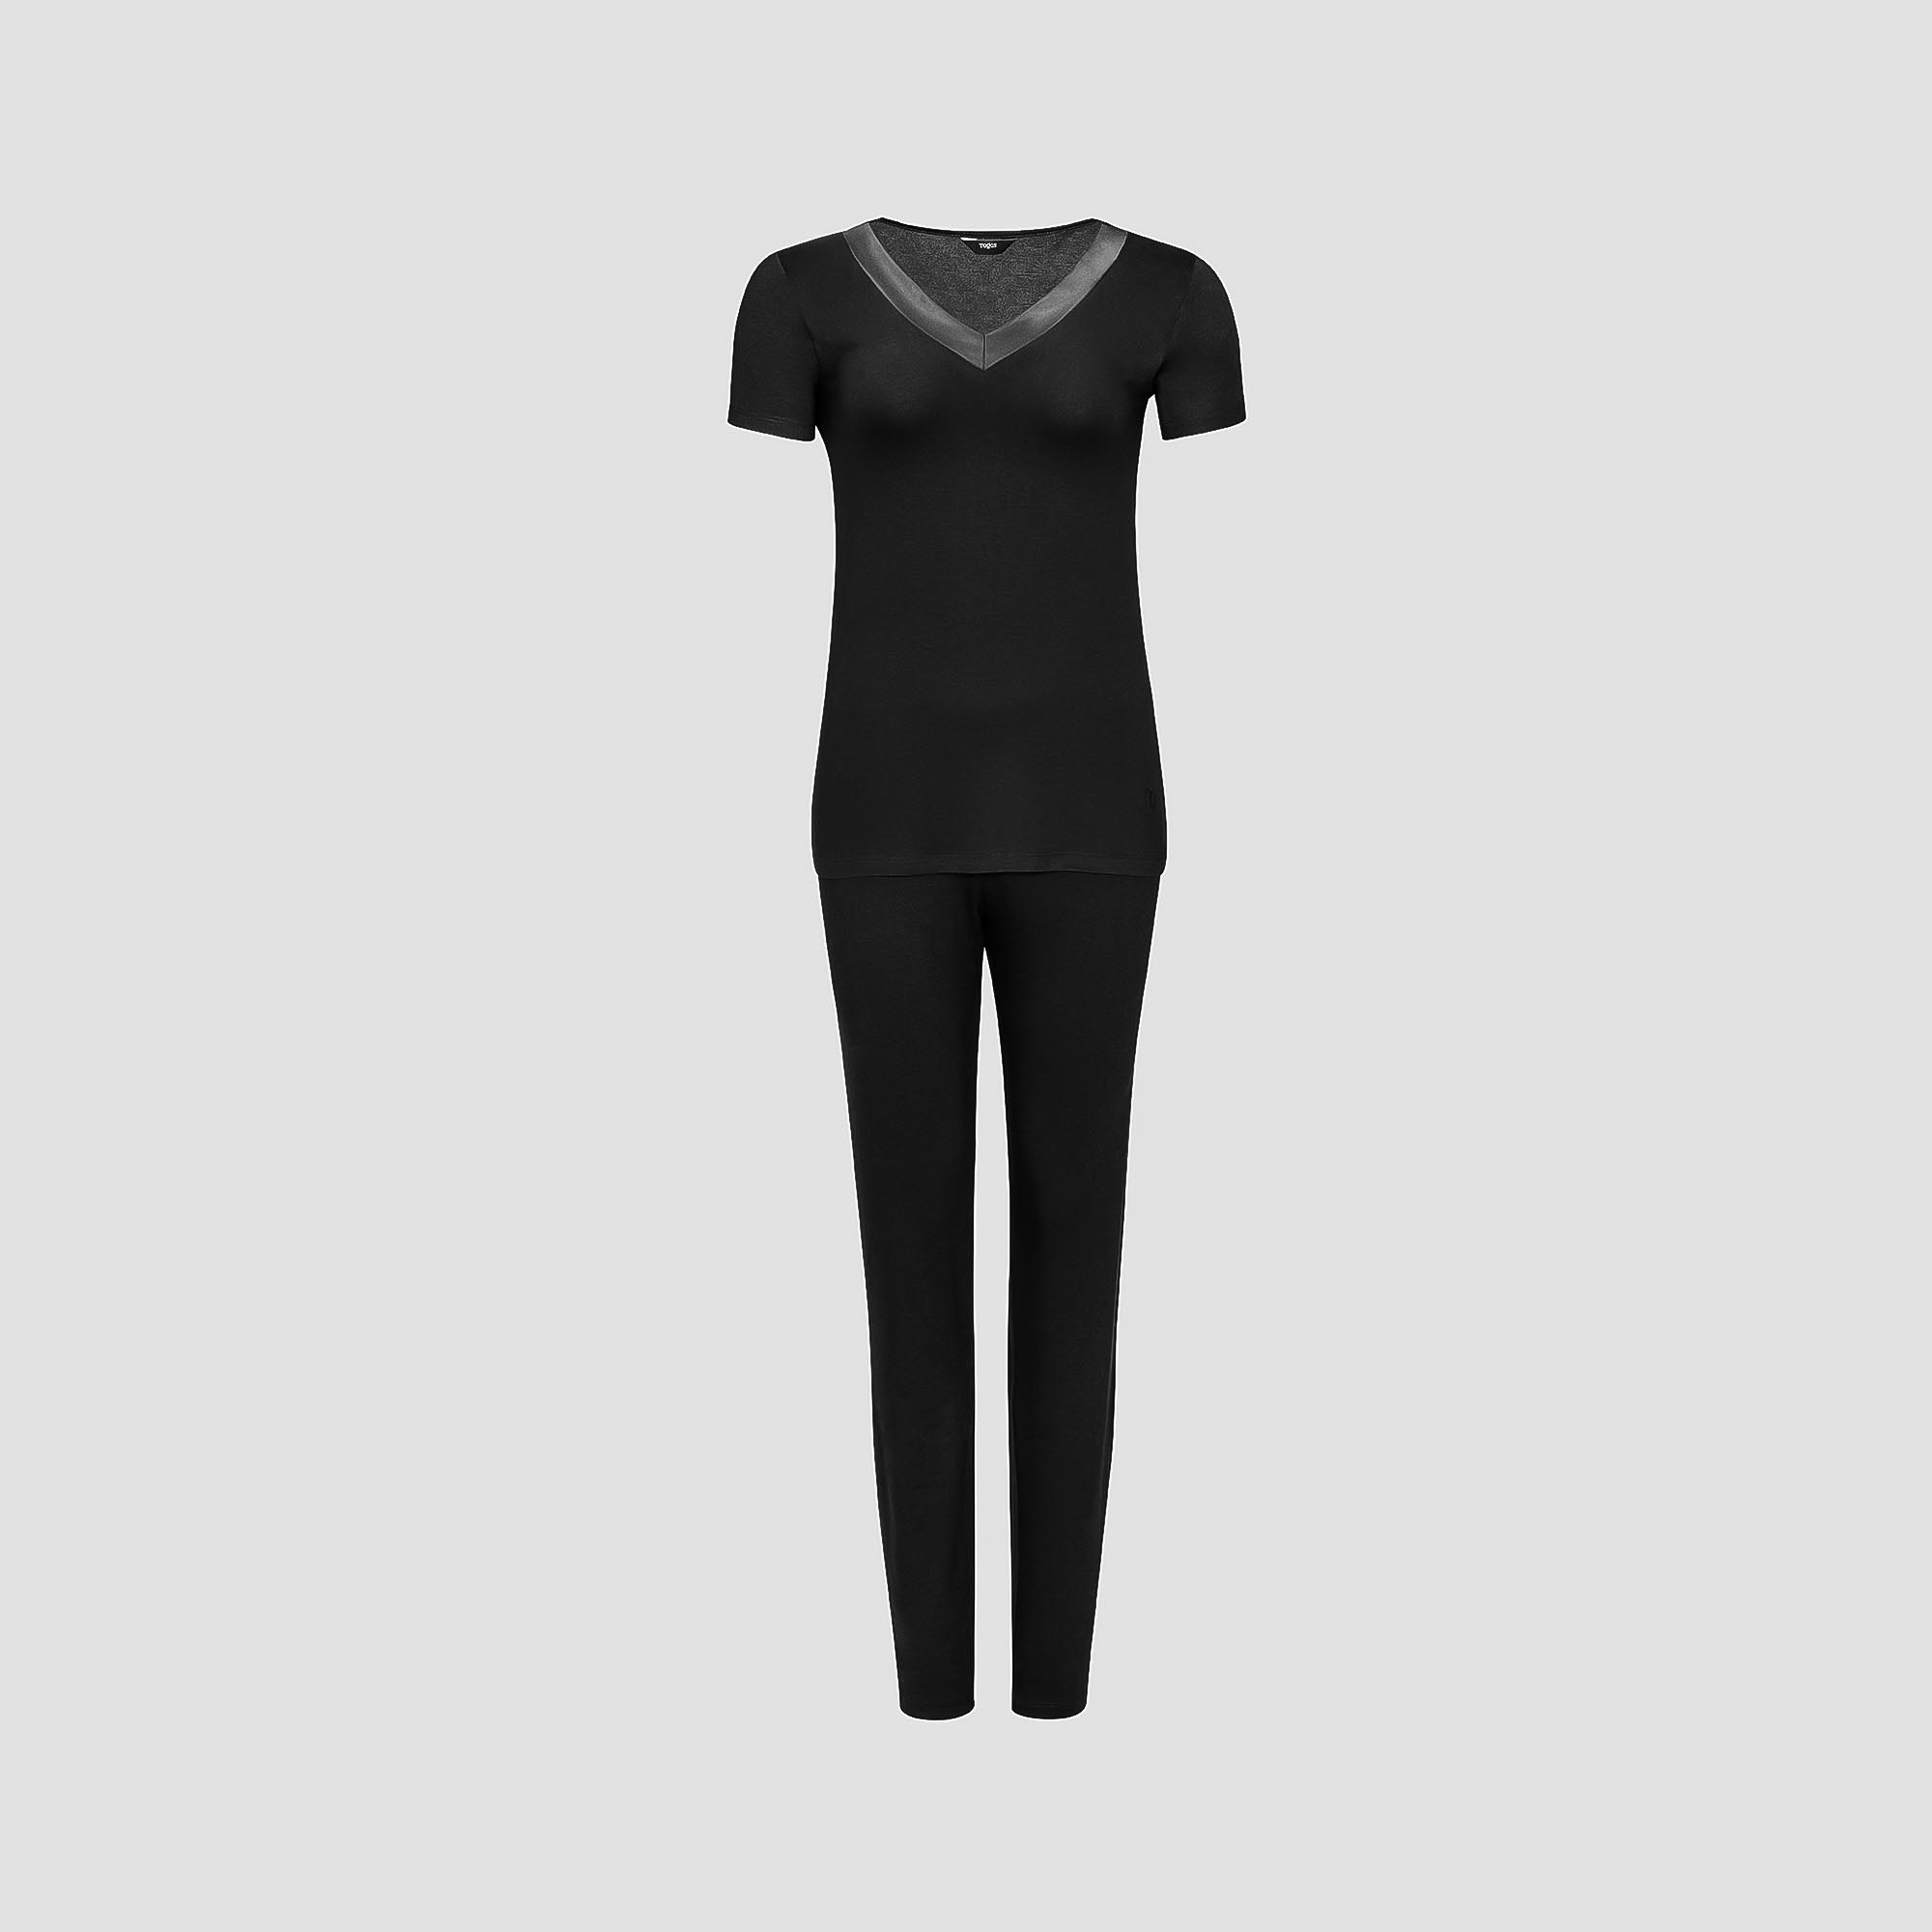 Пижама Togas Ингелла черная женская M(46) 2 предмета жен пижама с шортами арт 23 0098 розовый р 44